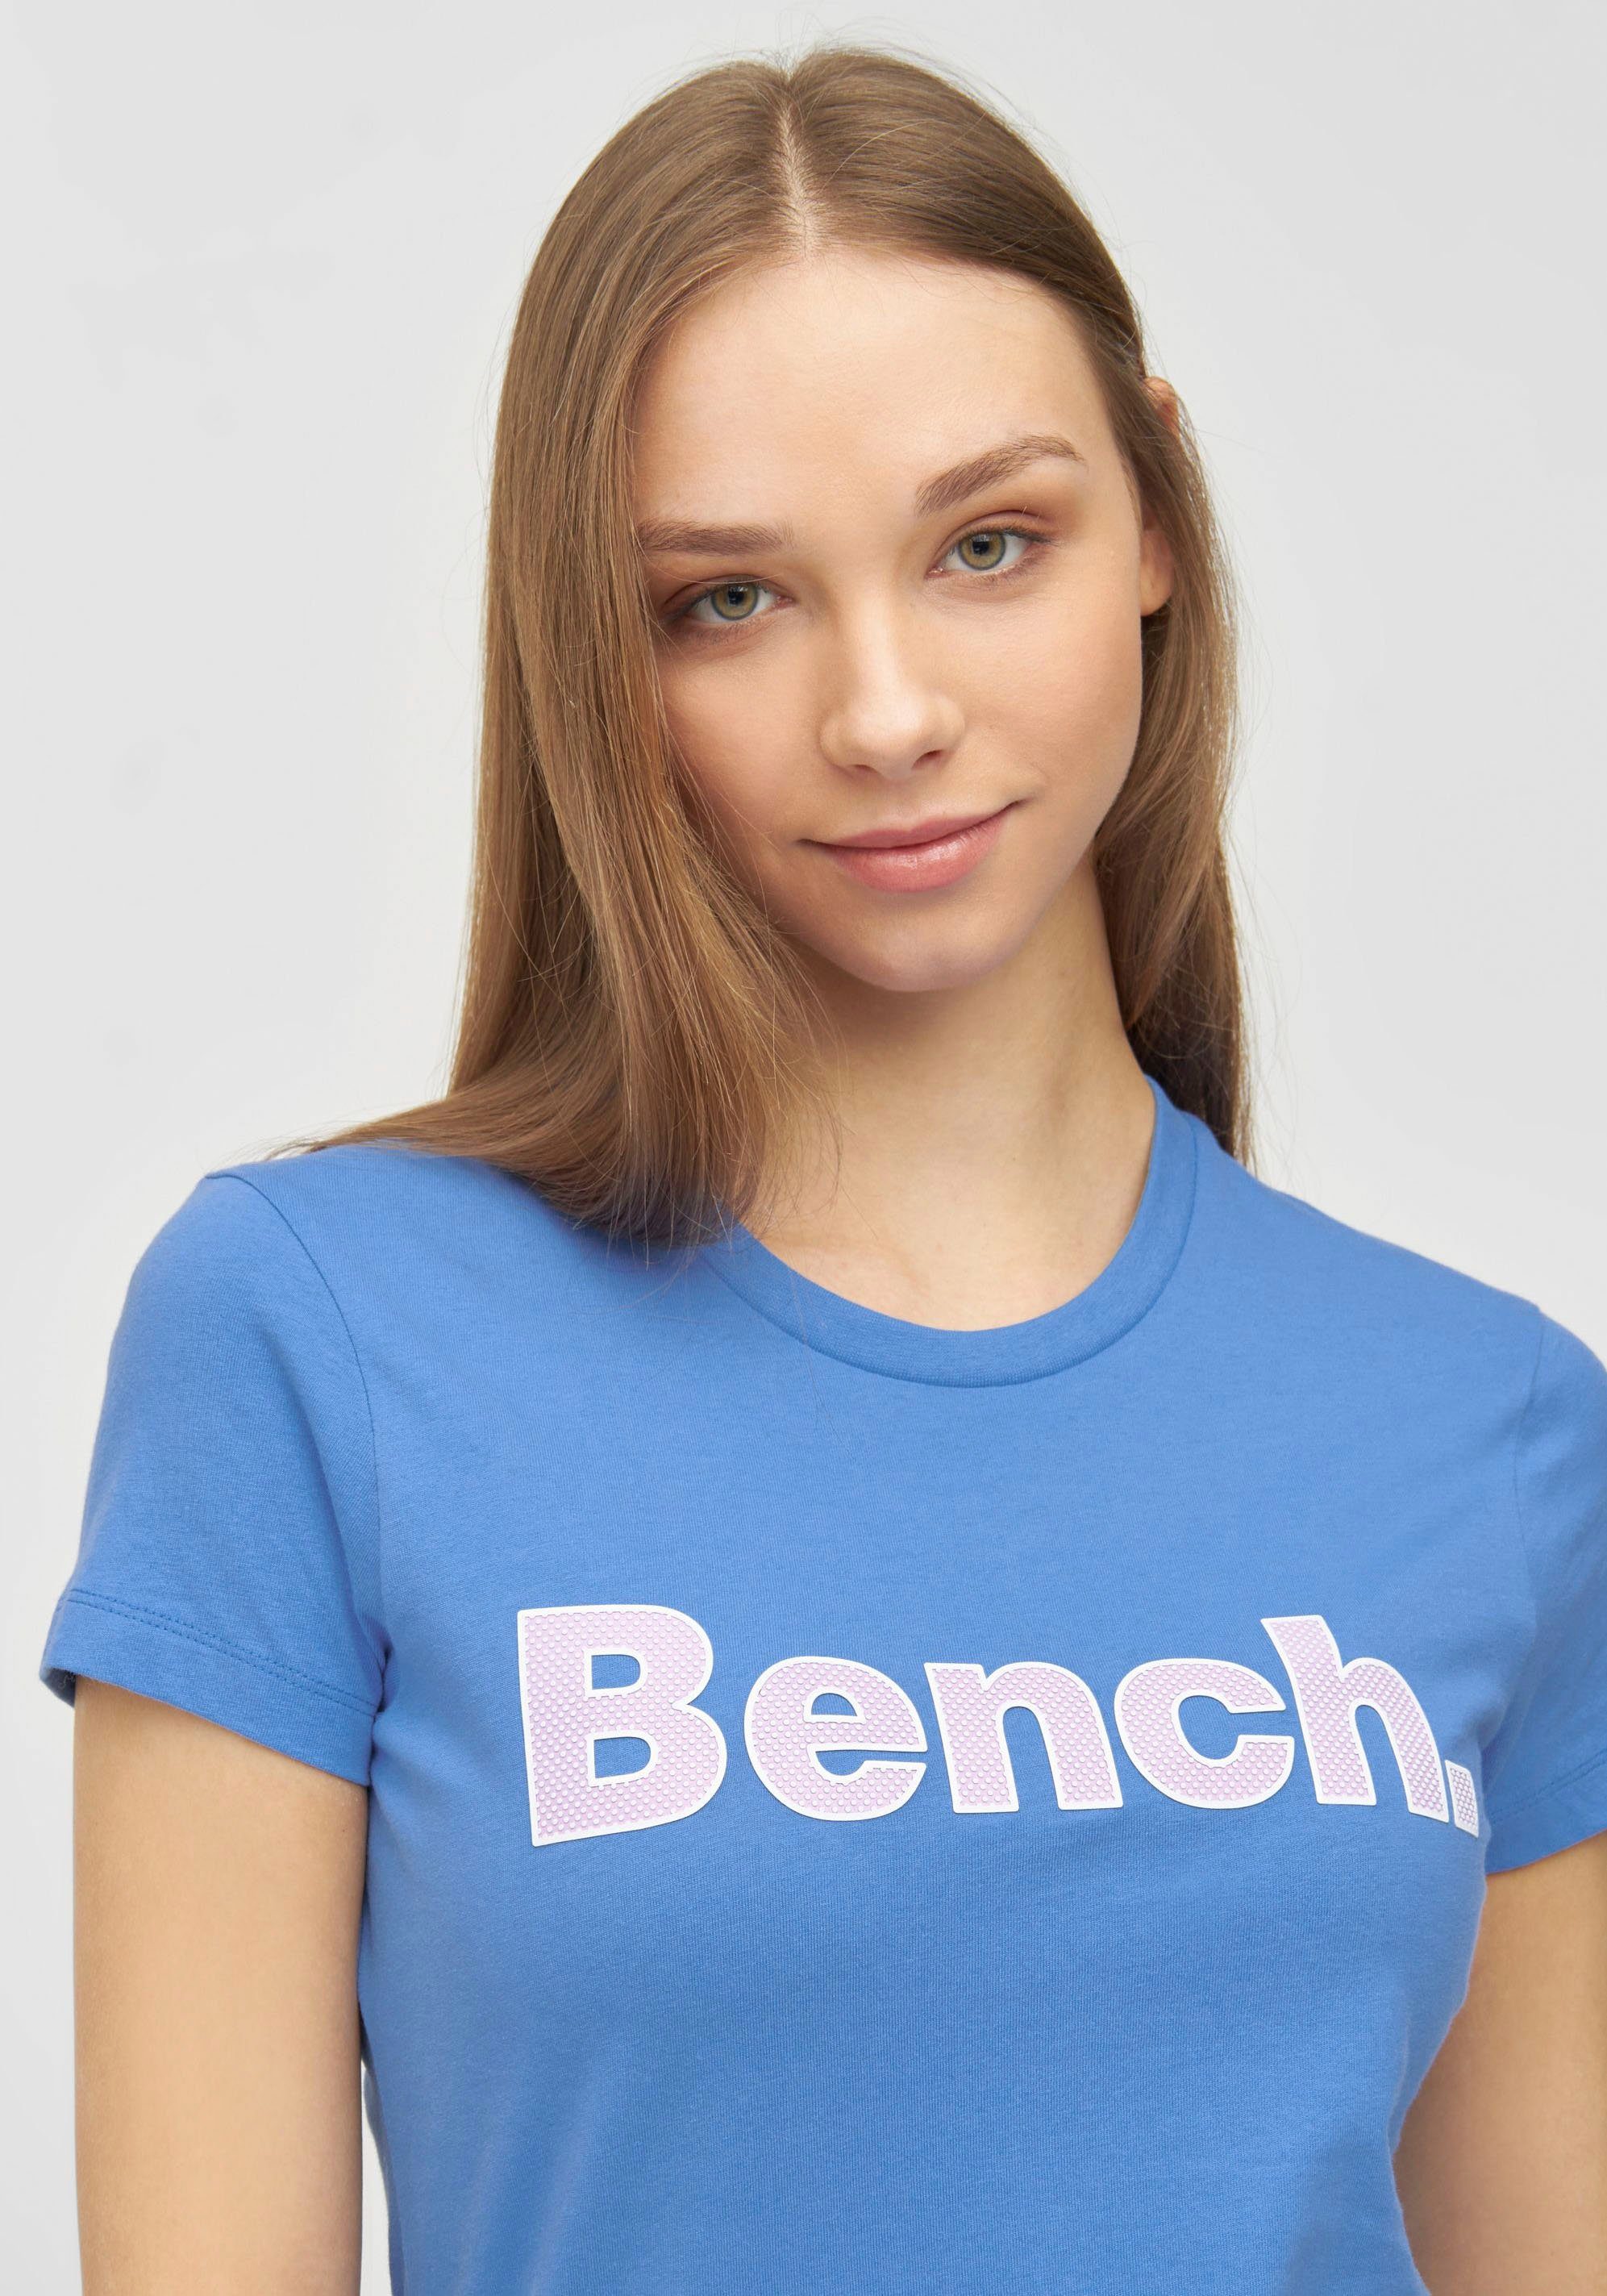 T-Shirt DENIMBLUE LEORA Bench.